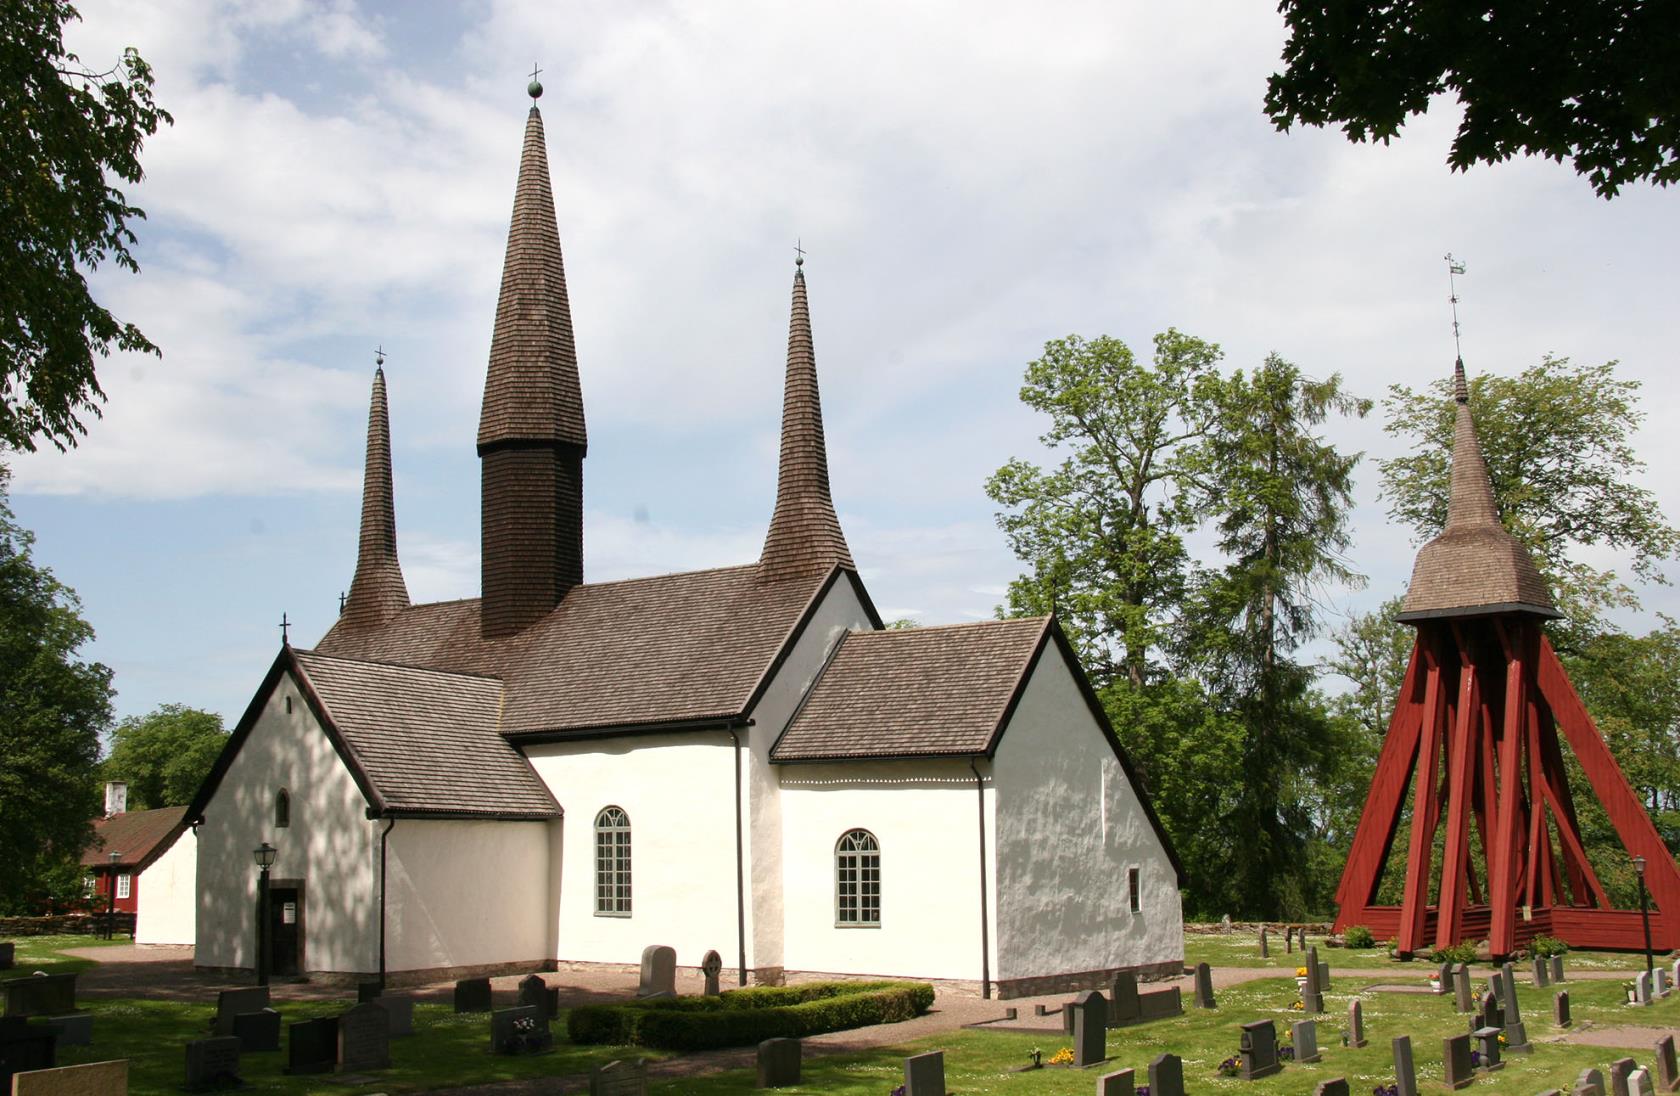 Kungslena kyrka med sina tre kyrktorn samt kyrkklockan intill, runt omkring är lummiga gröna träd och grönt gräs på kyrkogården.